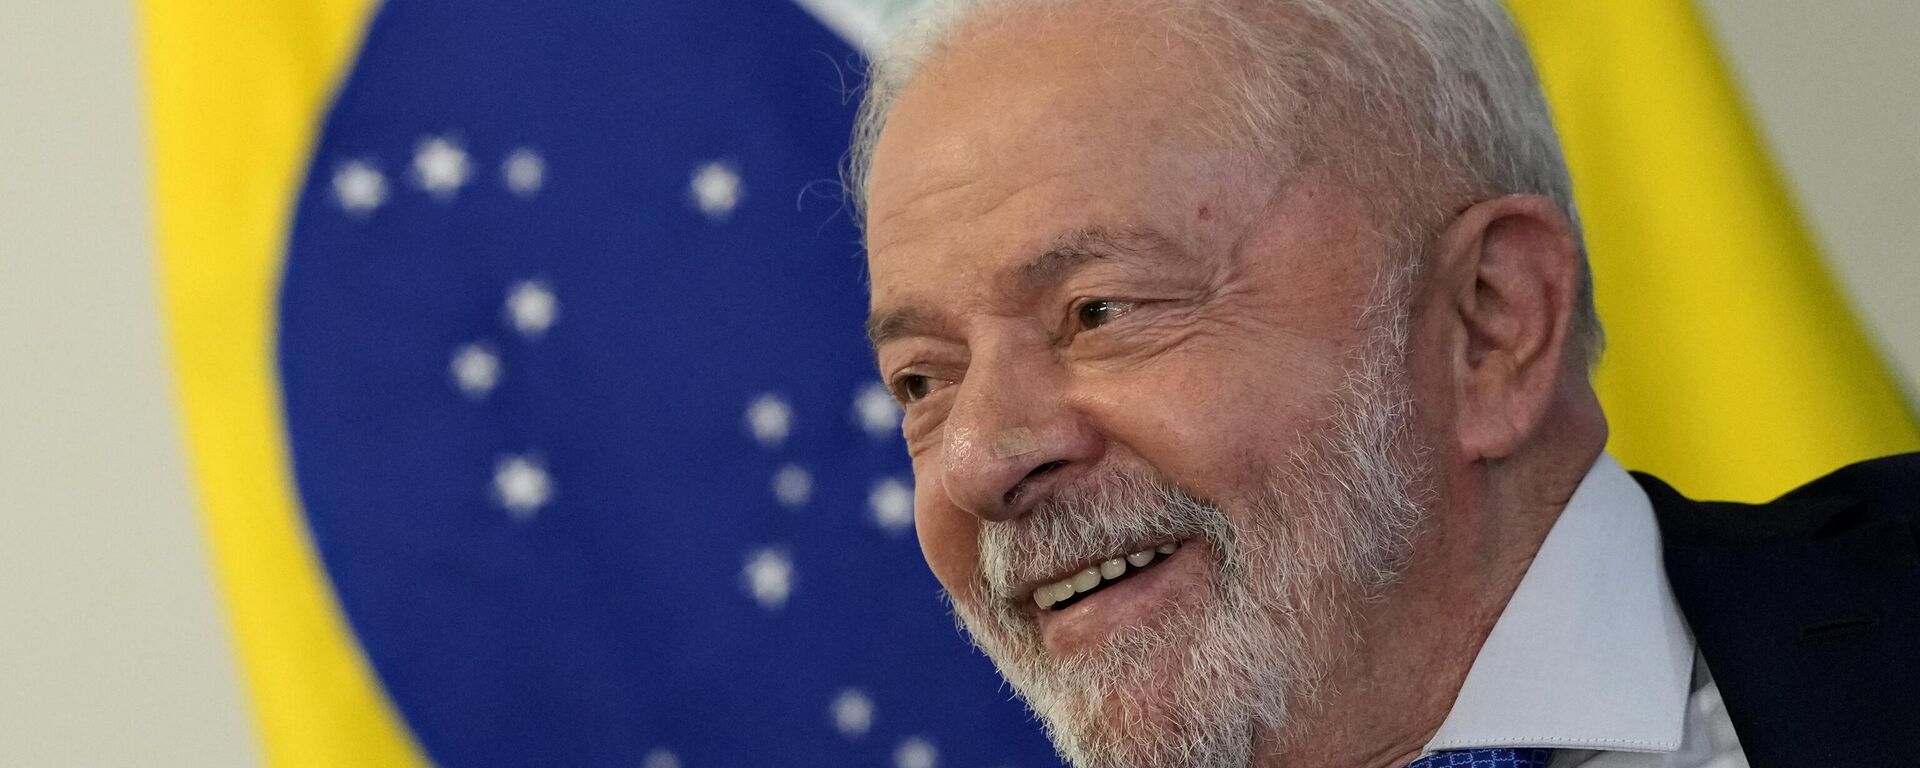 O presidente do Brasil, Luiz Inácio Lula da Silva, sorri durante uma reunião com membros do Congresso no Palácio do Planalto, o gabinete do presidente, em Brasília, Brasil, 11 de janeiro de 2023 - Sputnik Brasil, 1920, 13.03.2023